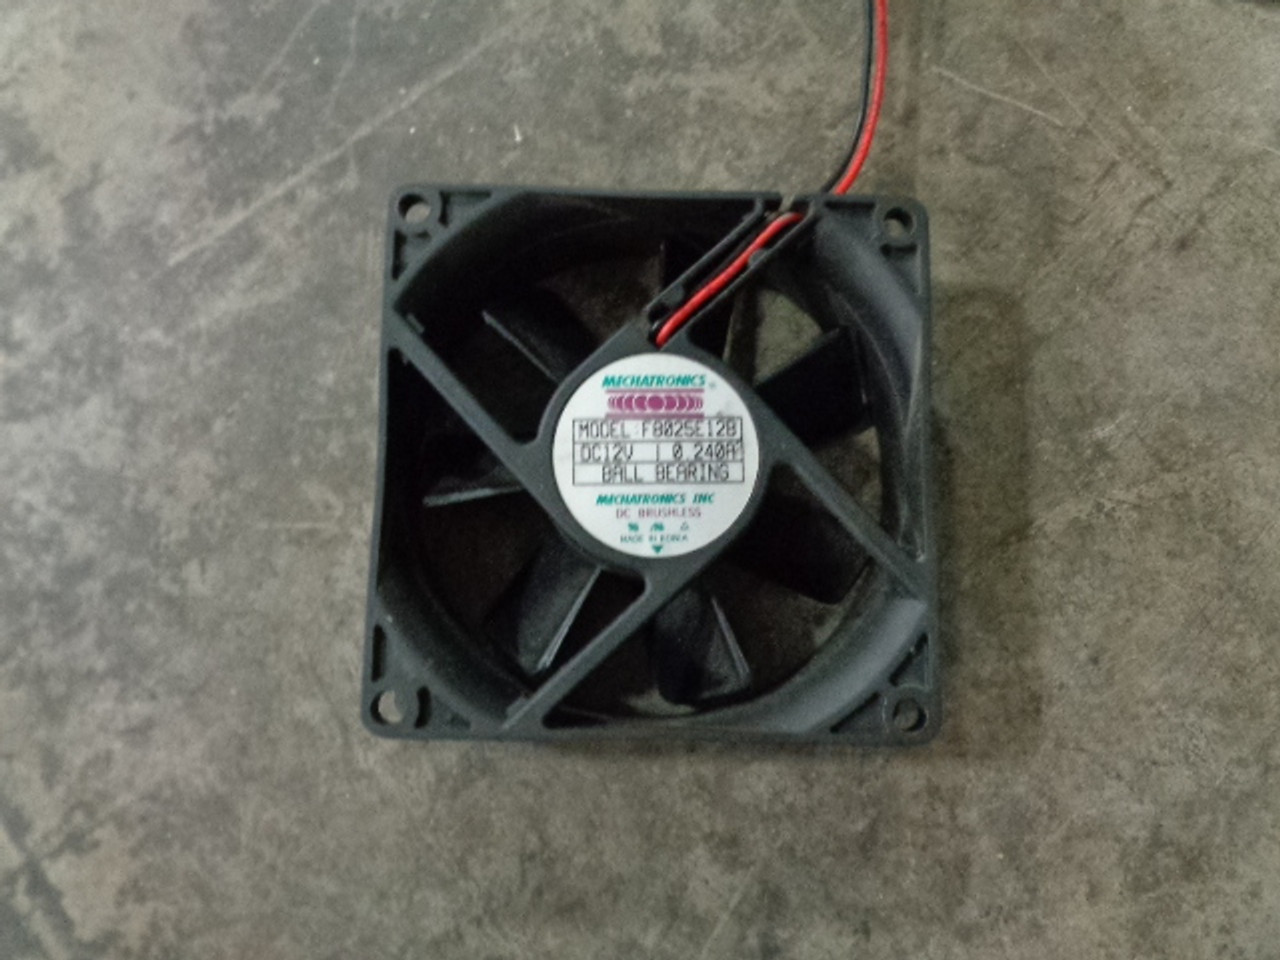 Mechatronics F8025E12B Equipment Cooling Fan, 3.15" (80mm) Square x 1" Depth, 12 VDC